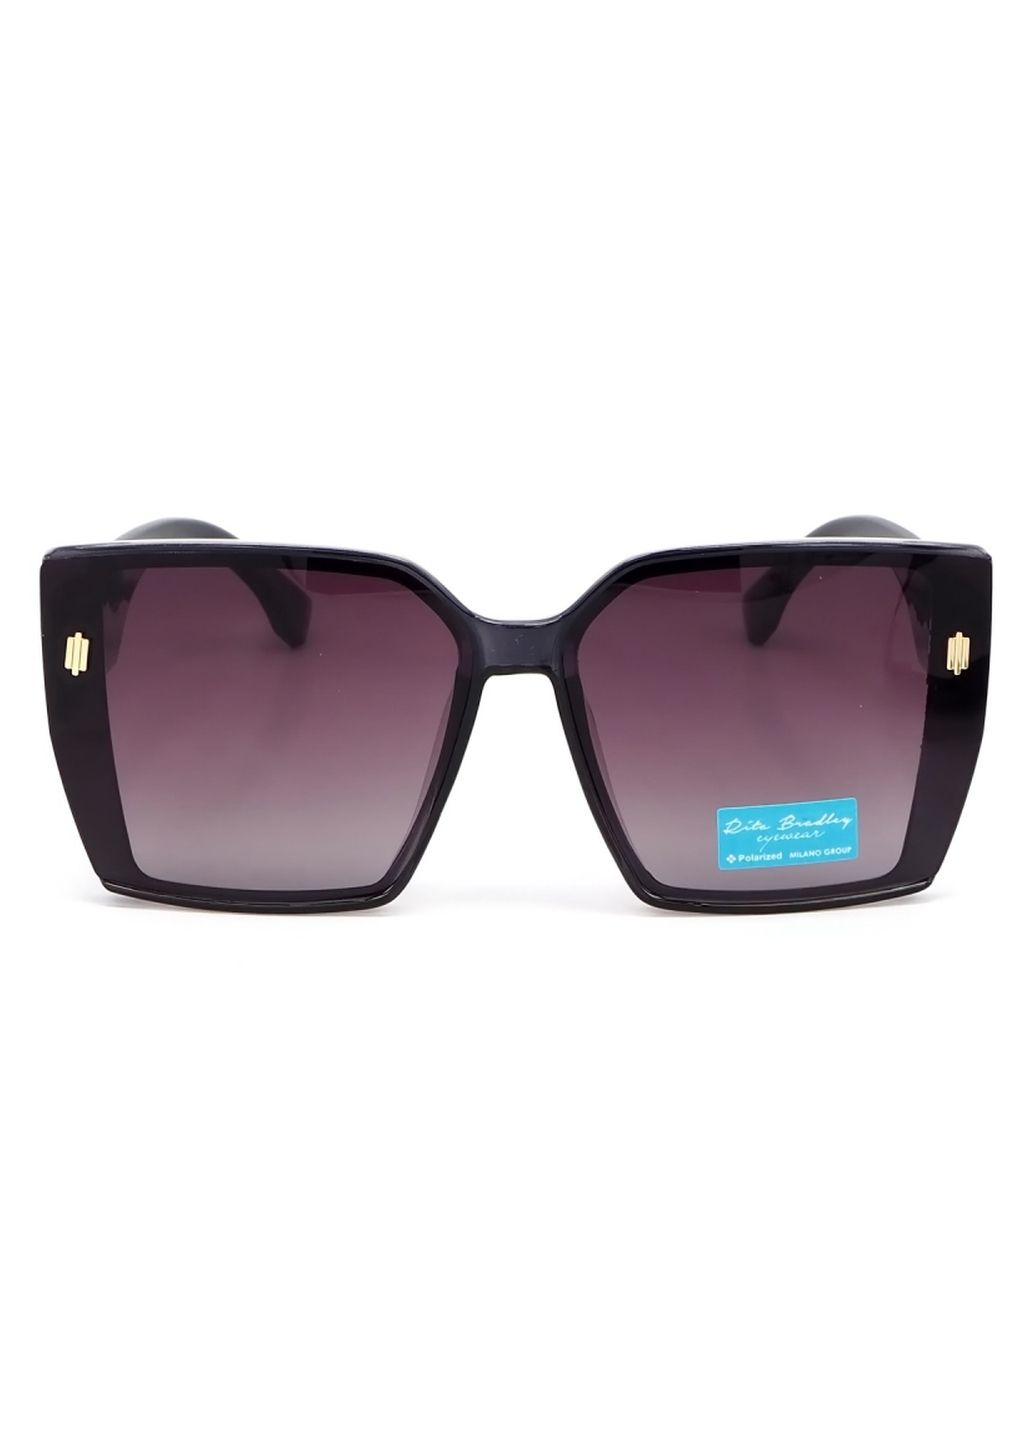 Купить Женские солнцезащитные очки Rita Bradley с поляризацией RB727 112059 в интернет-магазине